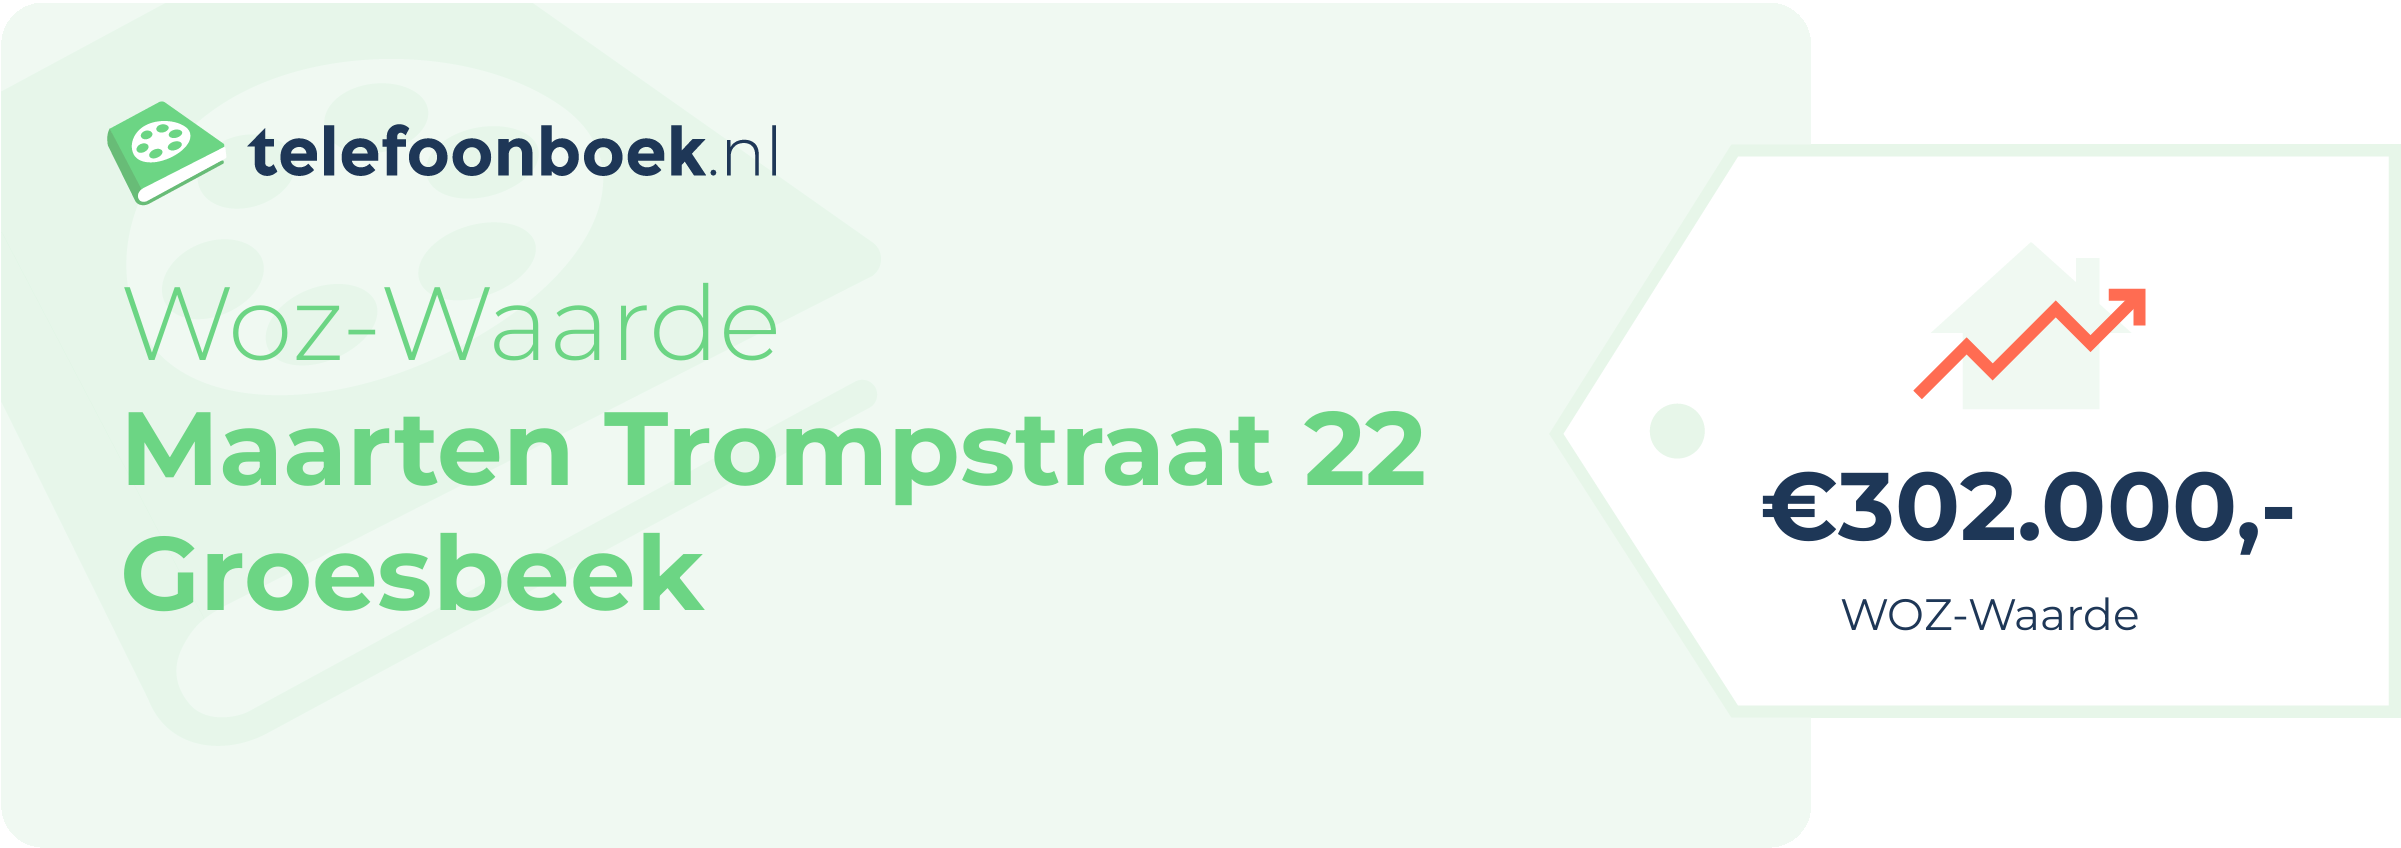 WOZ-waarde Maarten Trompstraat 22 Groesbeek